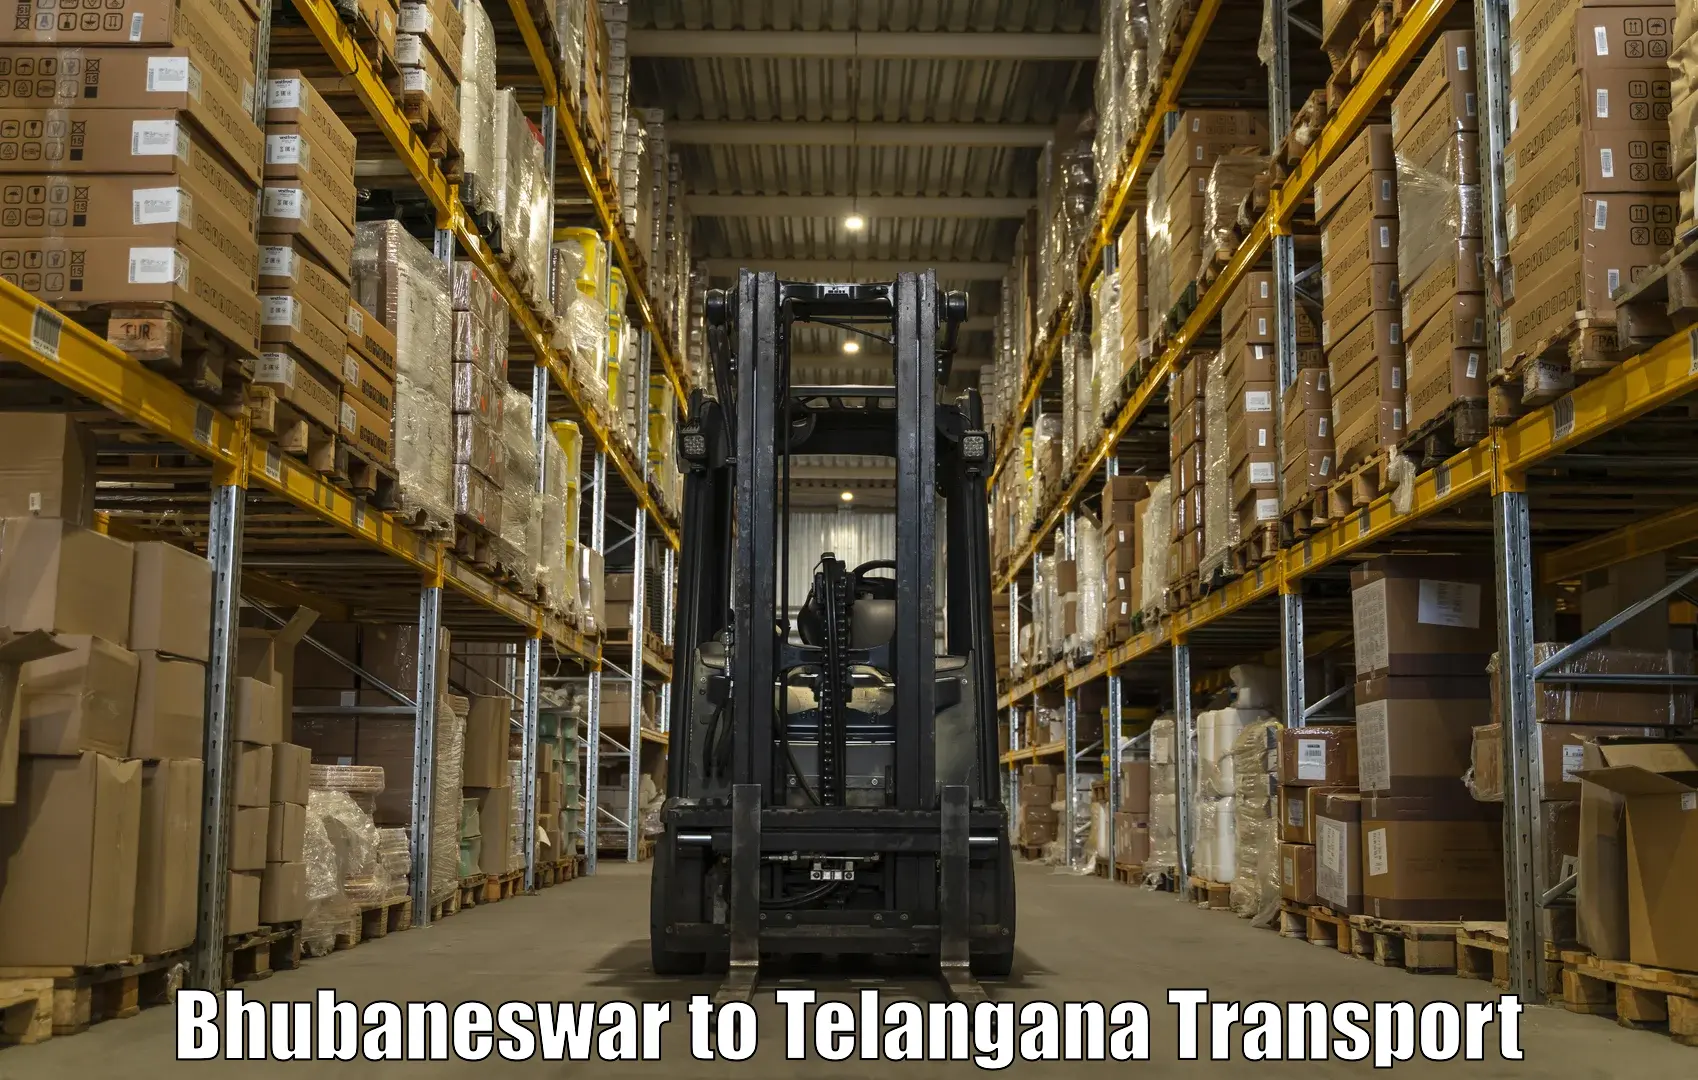 Truck transport companies in India Bhubaneswar to Tadoor